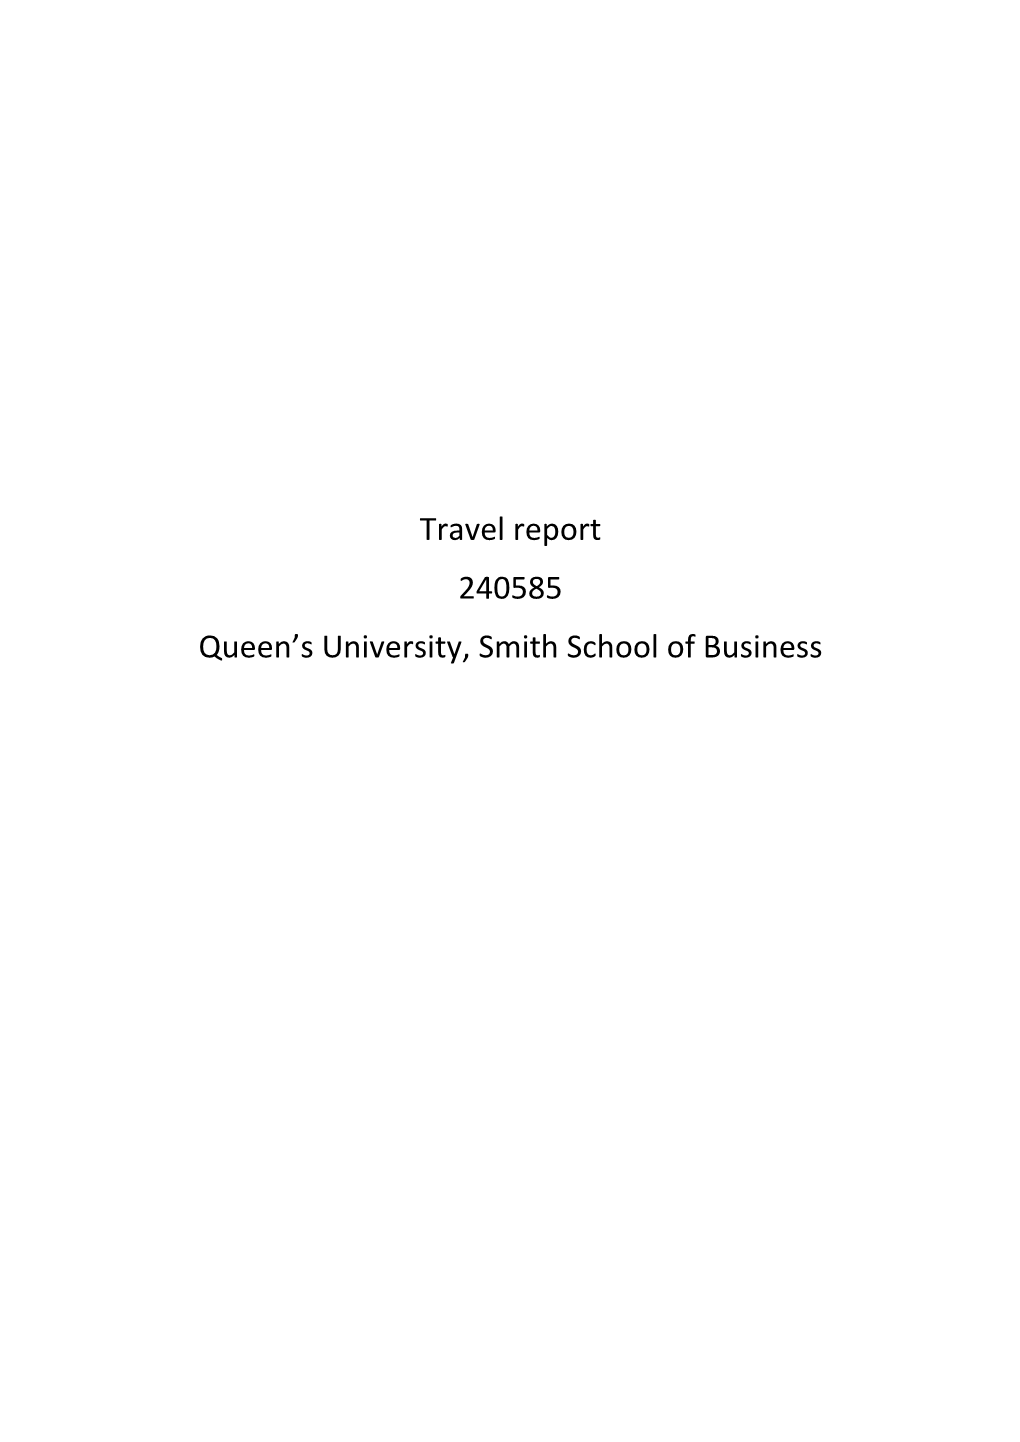 Travel Report 240585 Queen's University, Smith School of Business